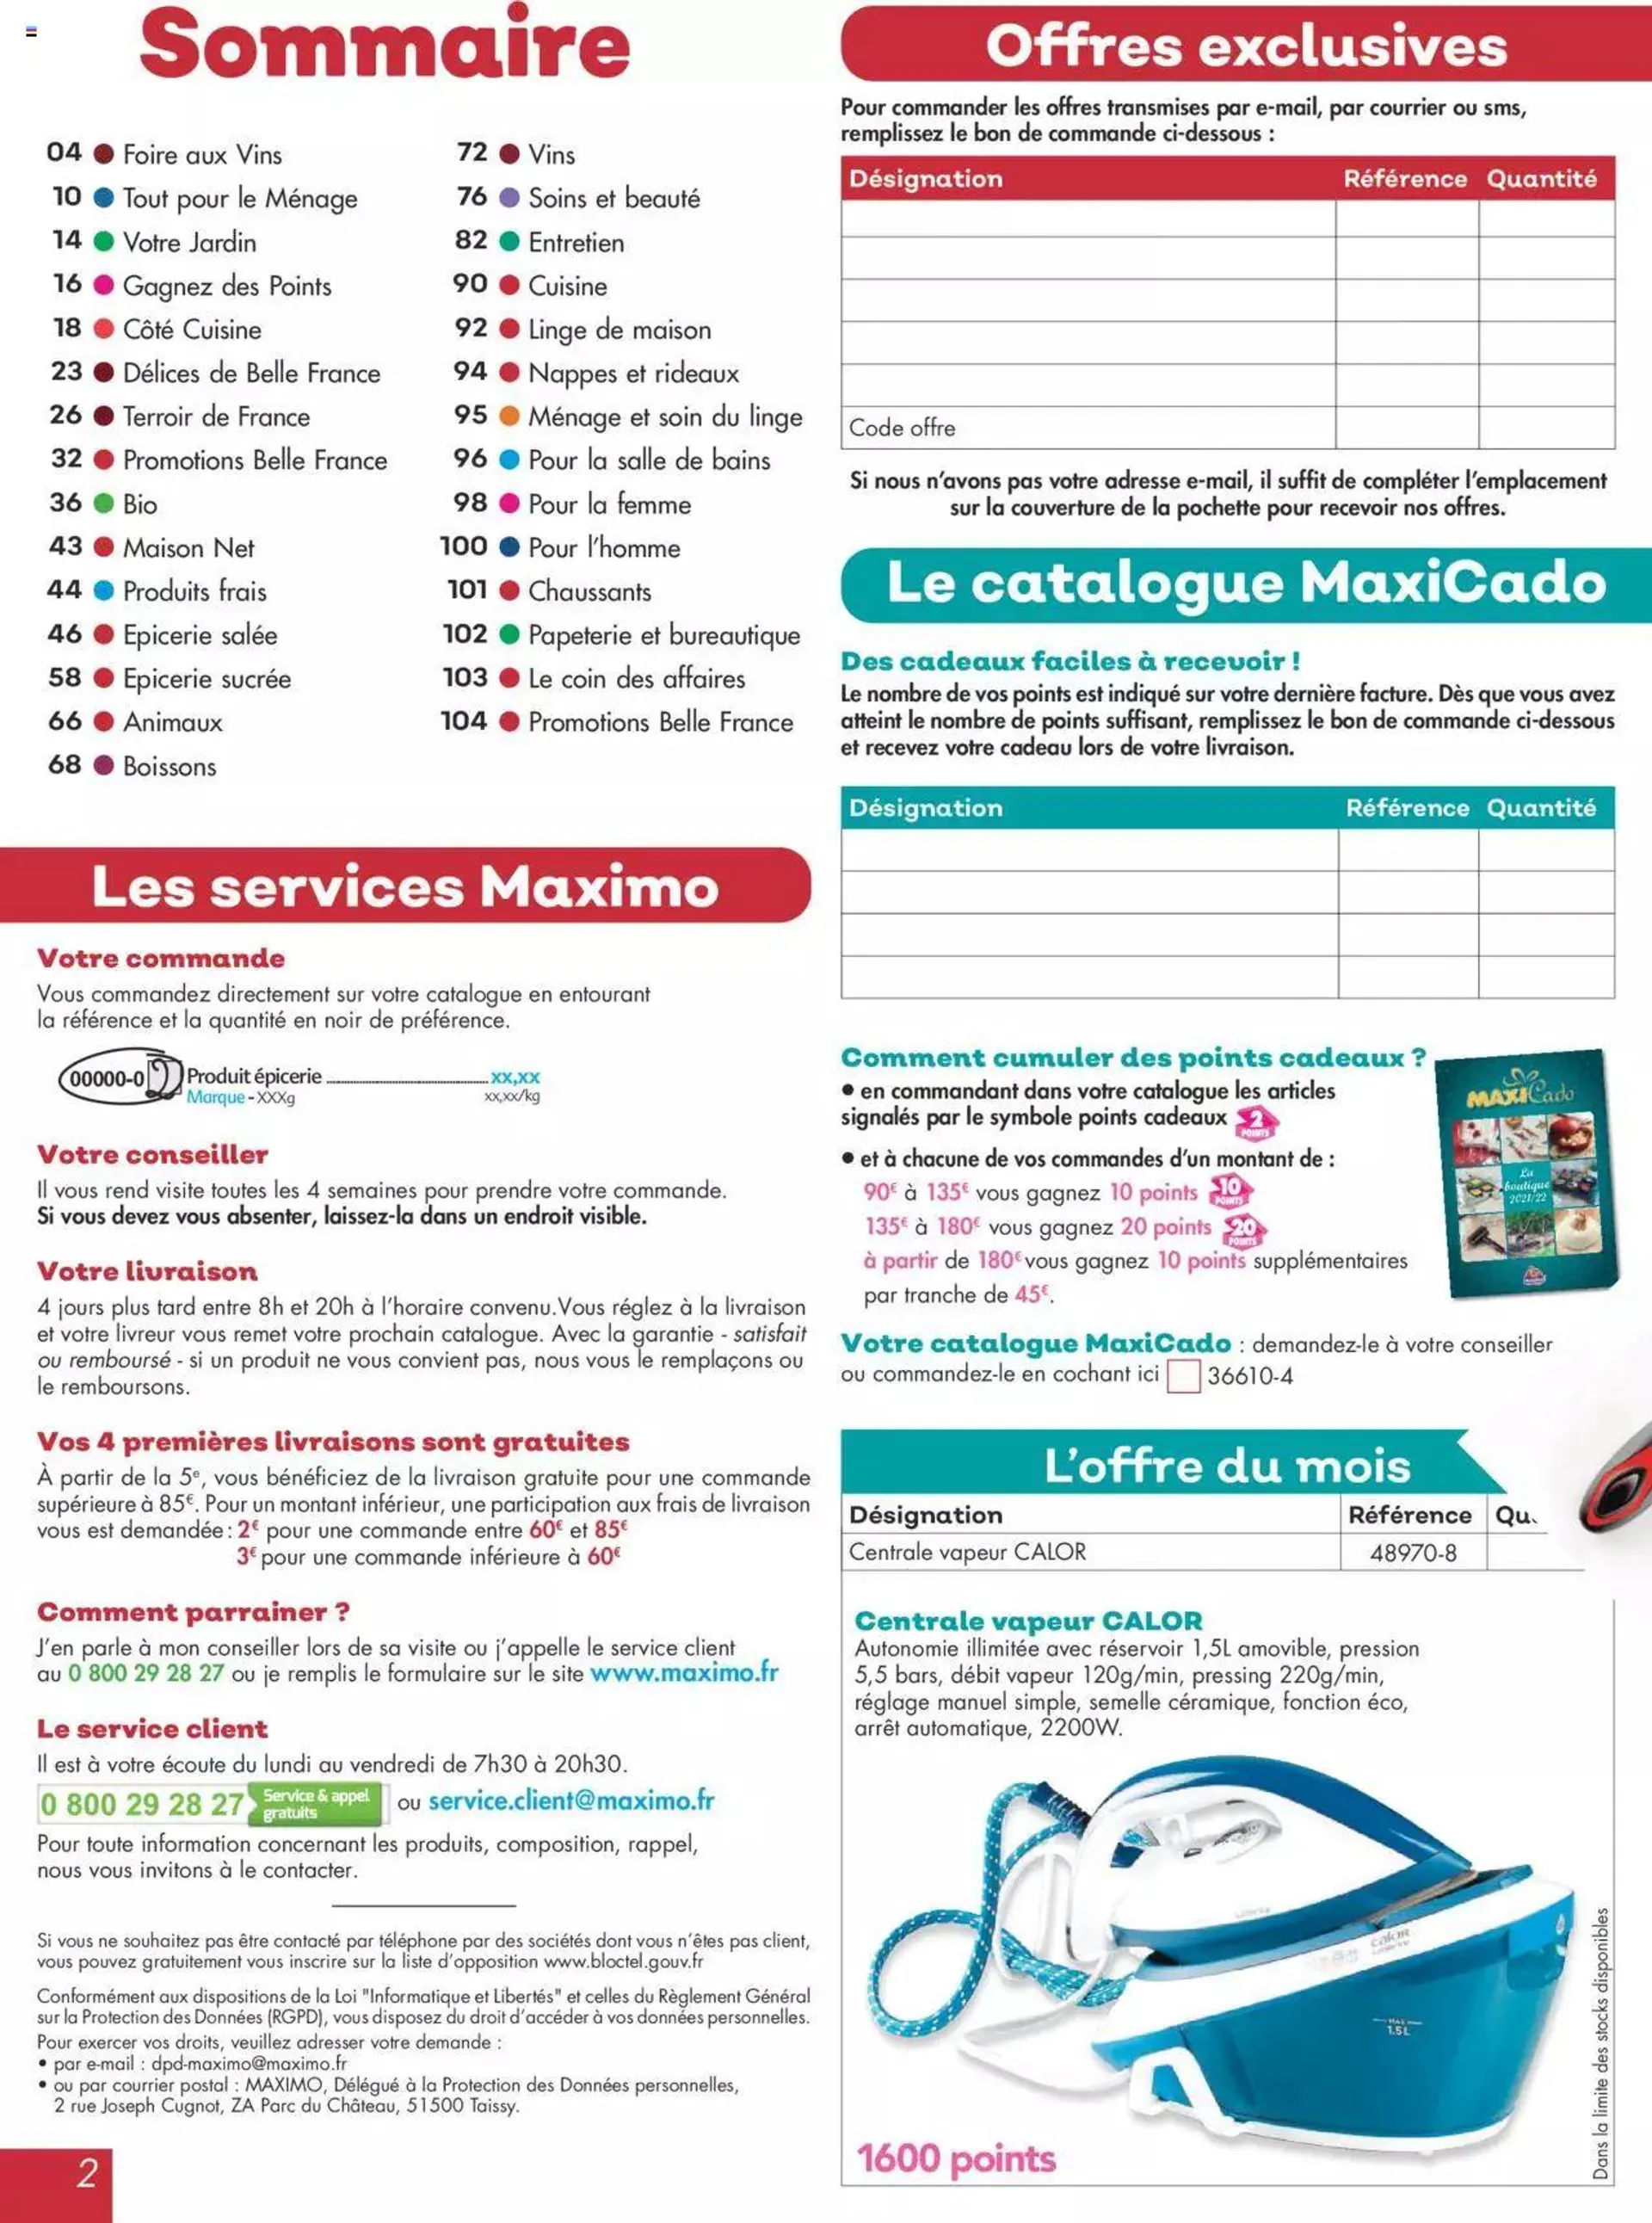 Maximo catalogue - 1